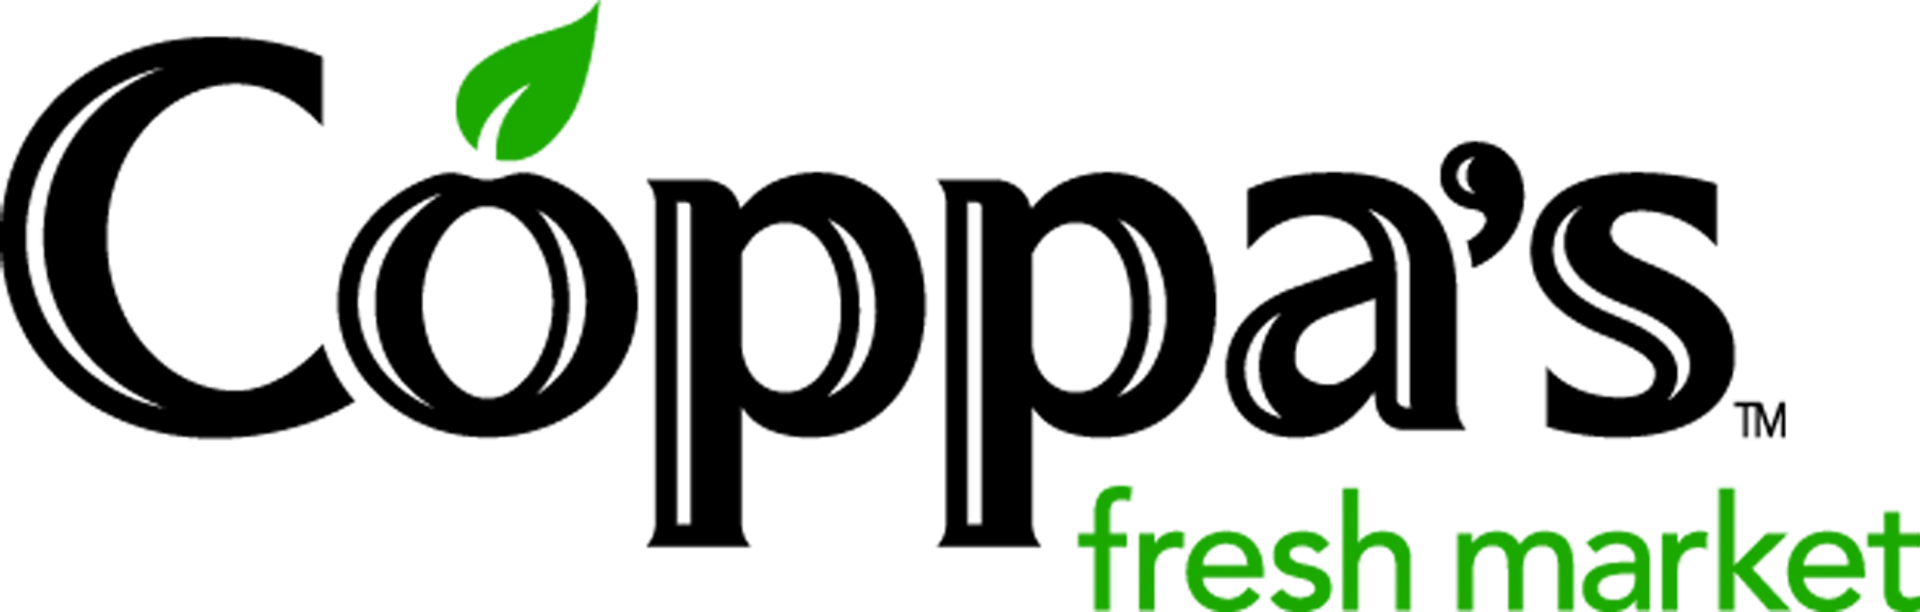 COPPAS FRESH MARKET logo